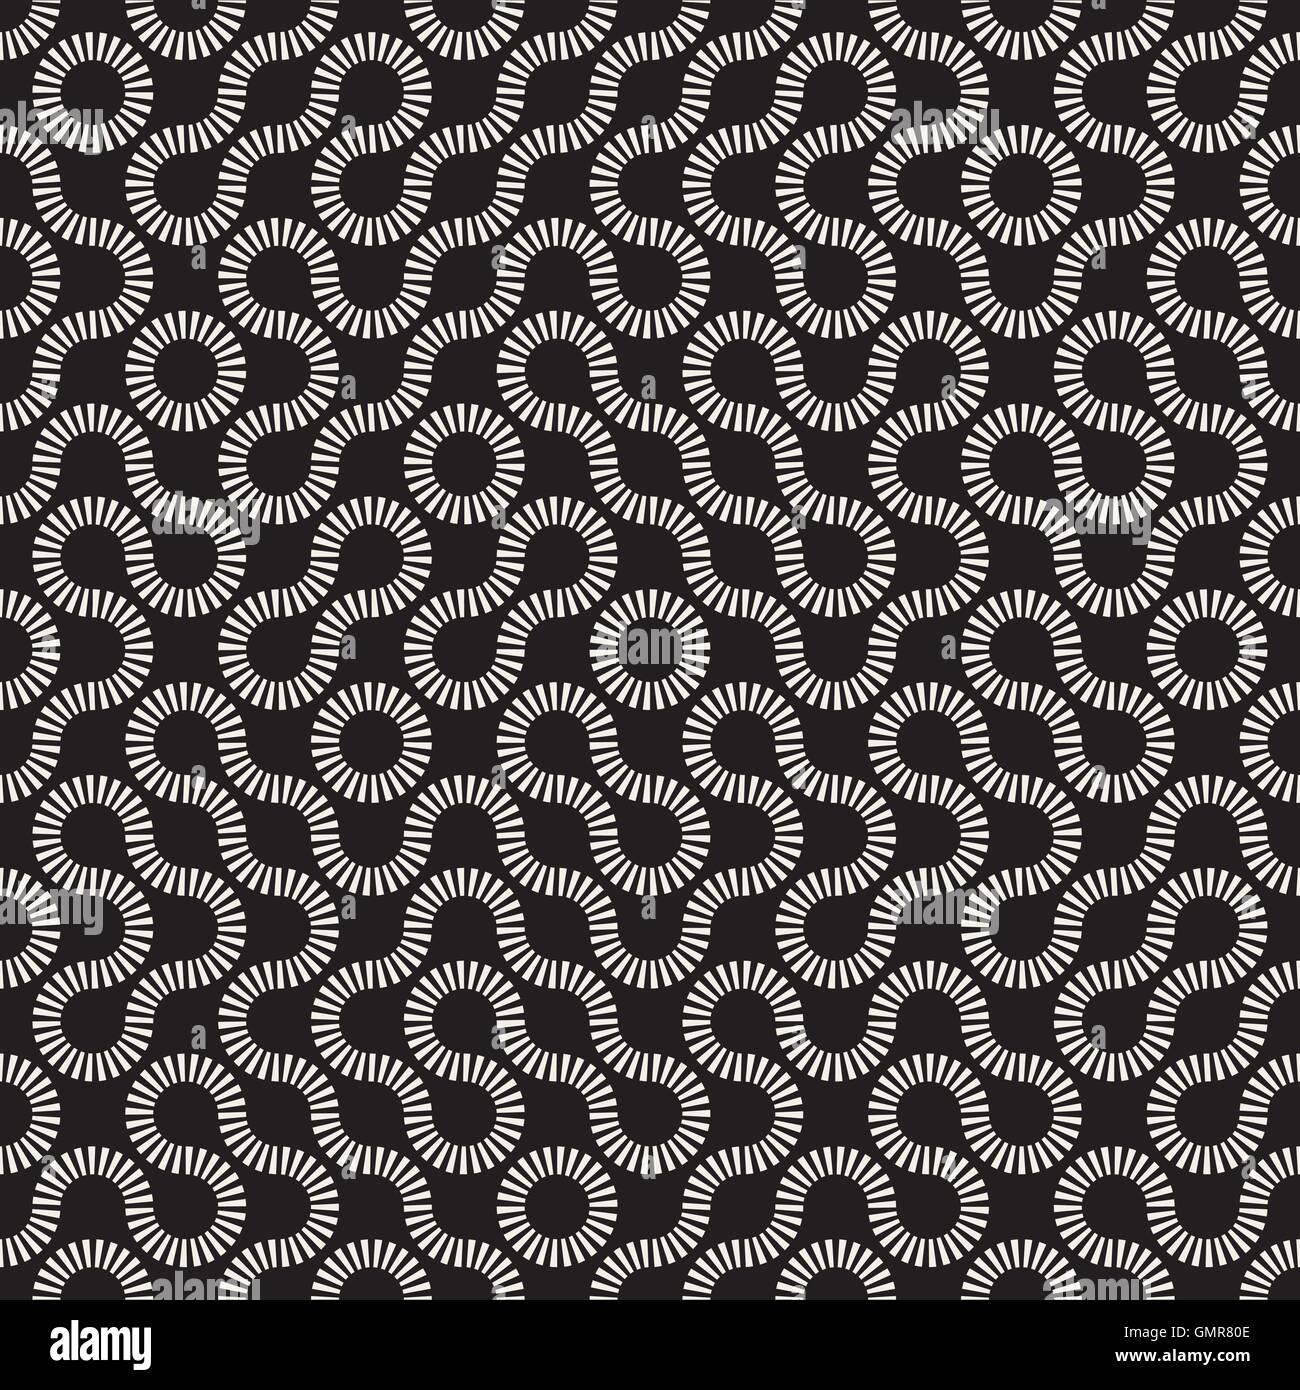 Nahtlose schwarz-weiß Vektor runden Kreis Labyrinth Dash Linienmuster Truchet Stock Vektor